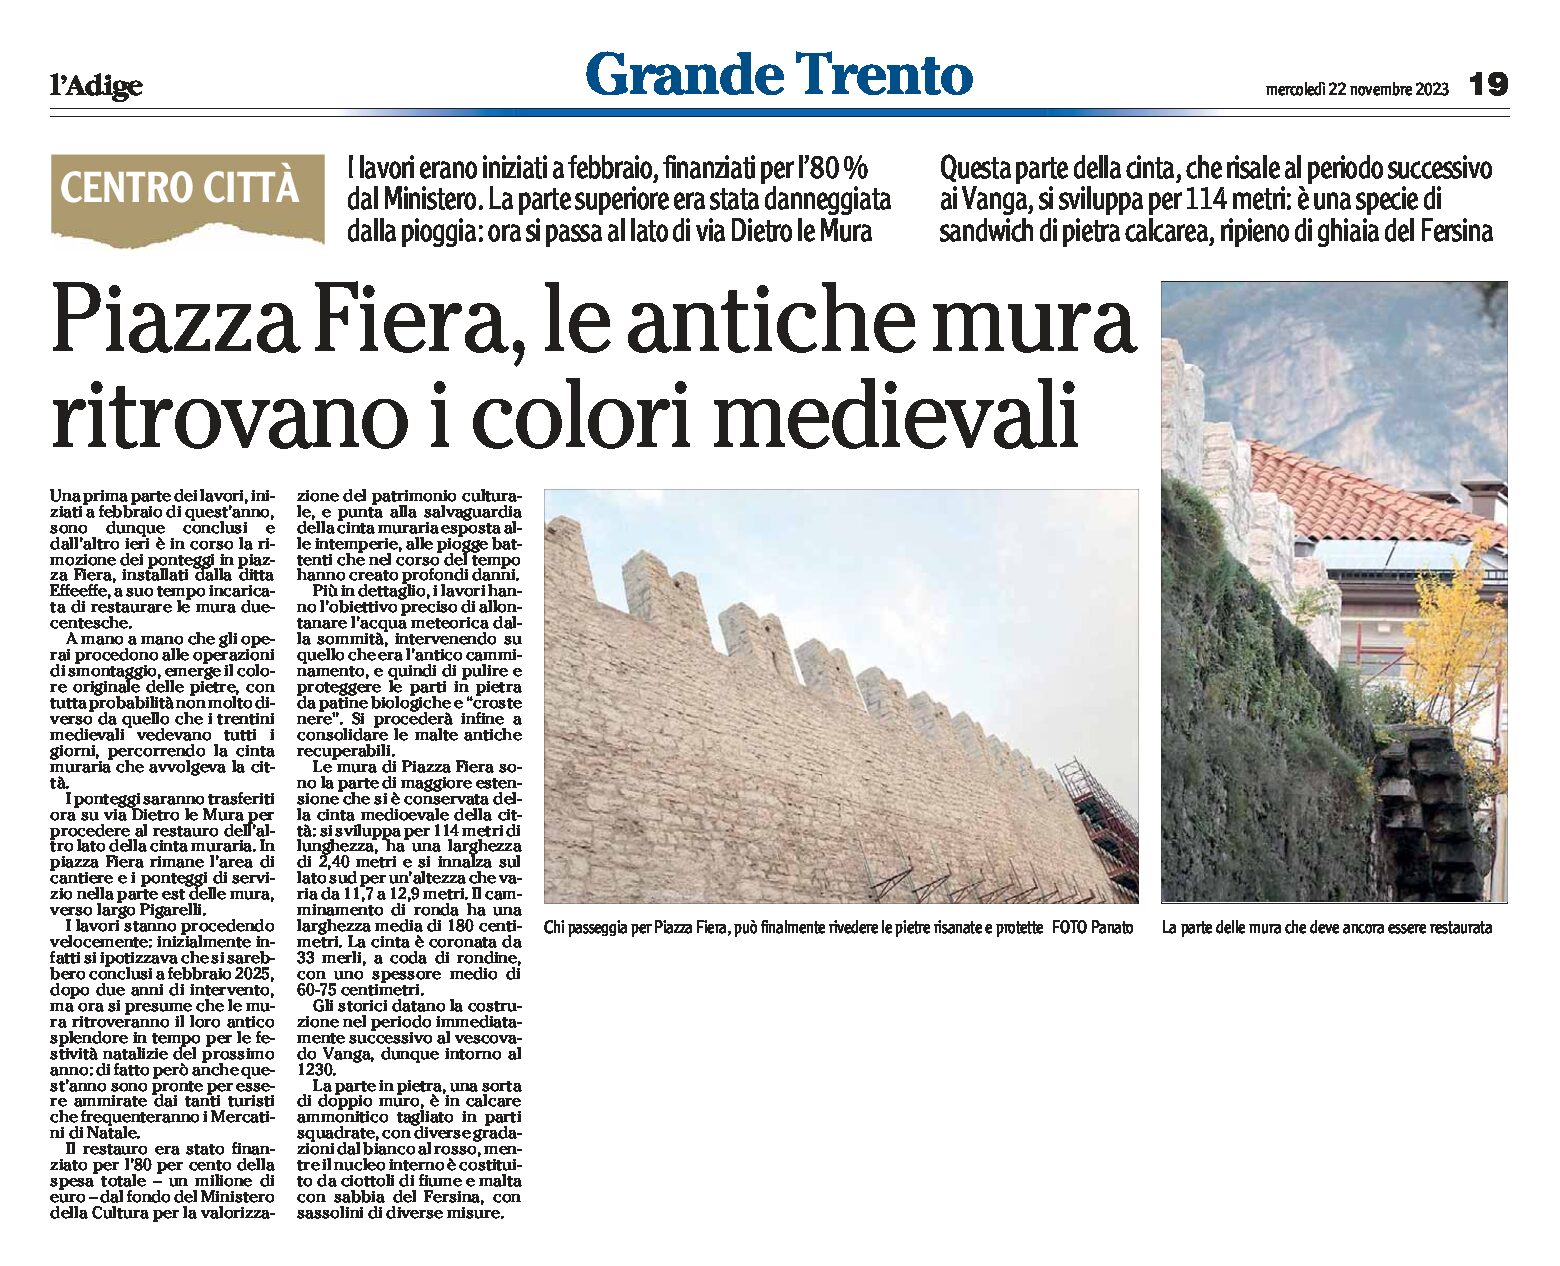 Trento: in piazza Fiera, le antiche mura a vista